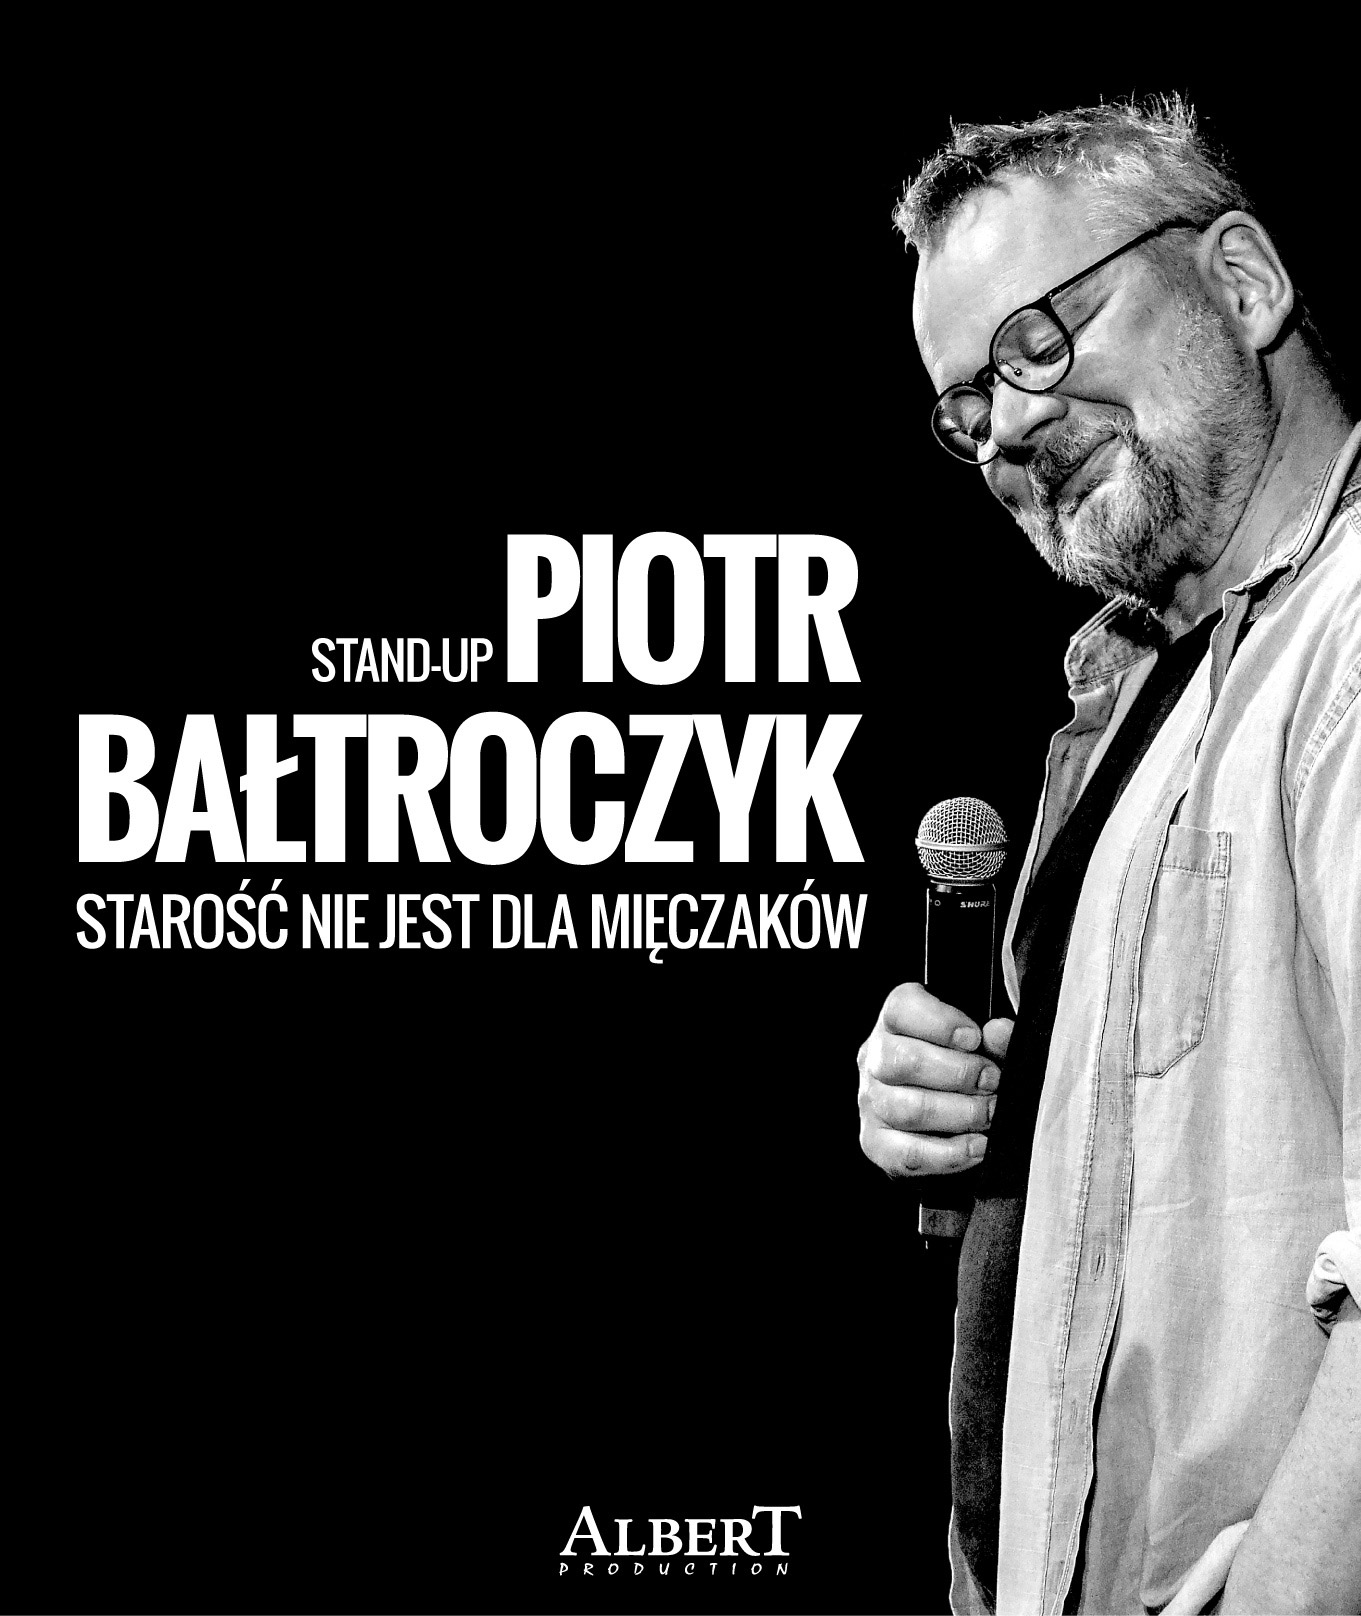 Piotr Bałtroczyk wystąpi w Słubicach